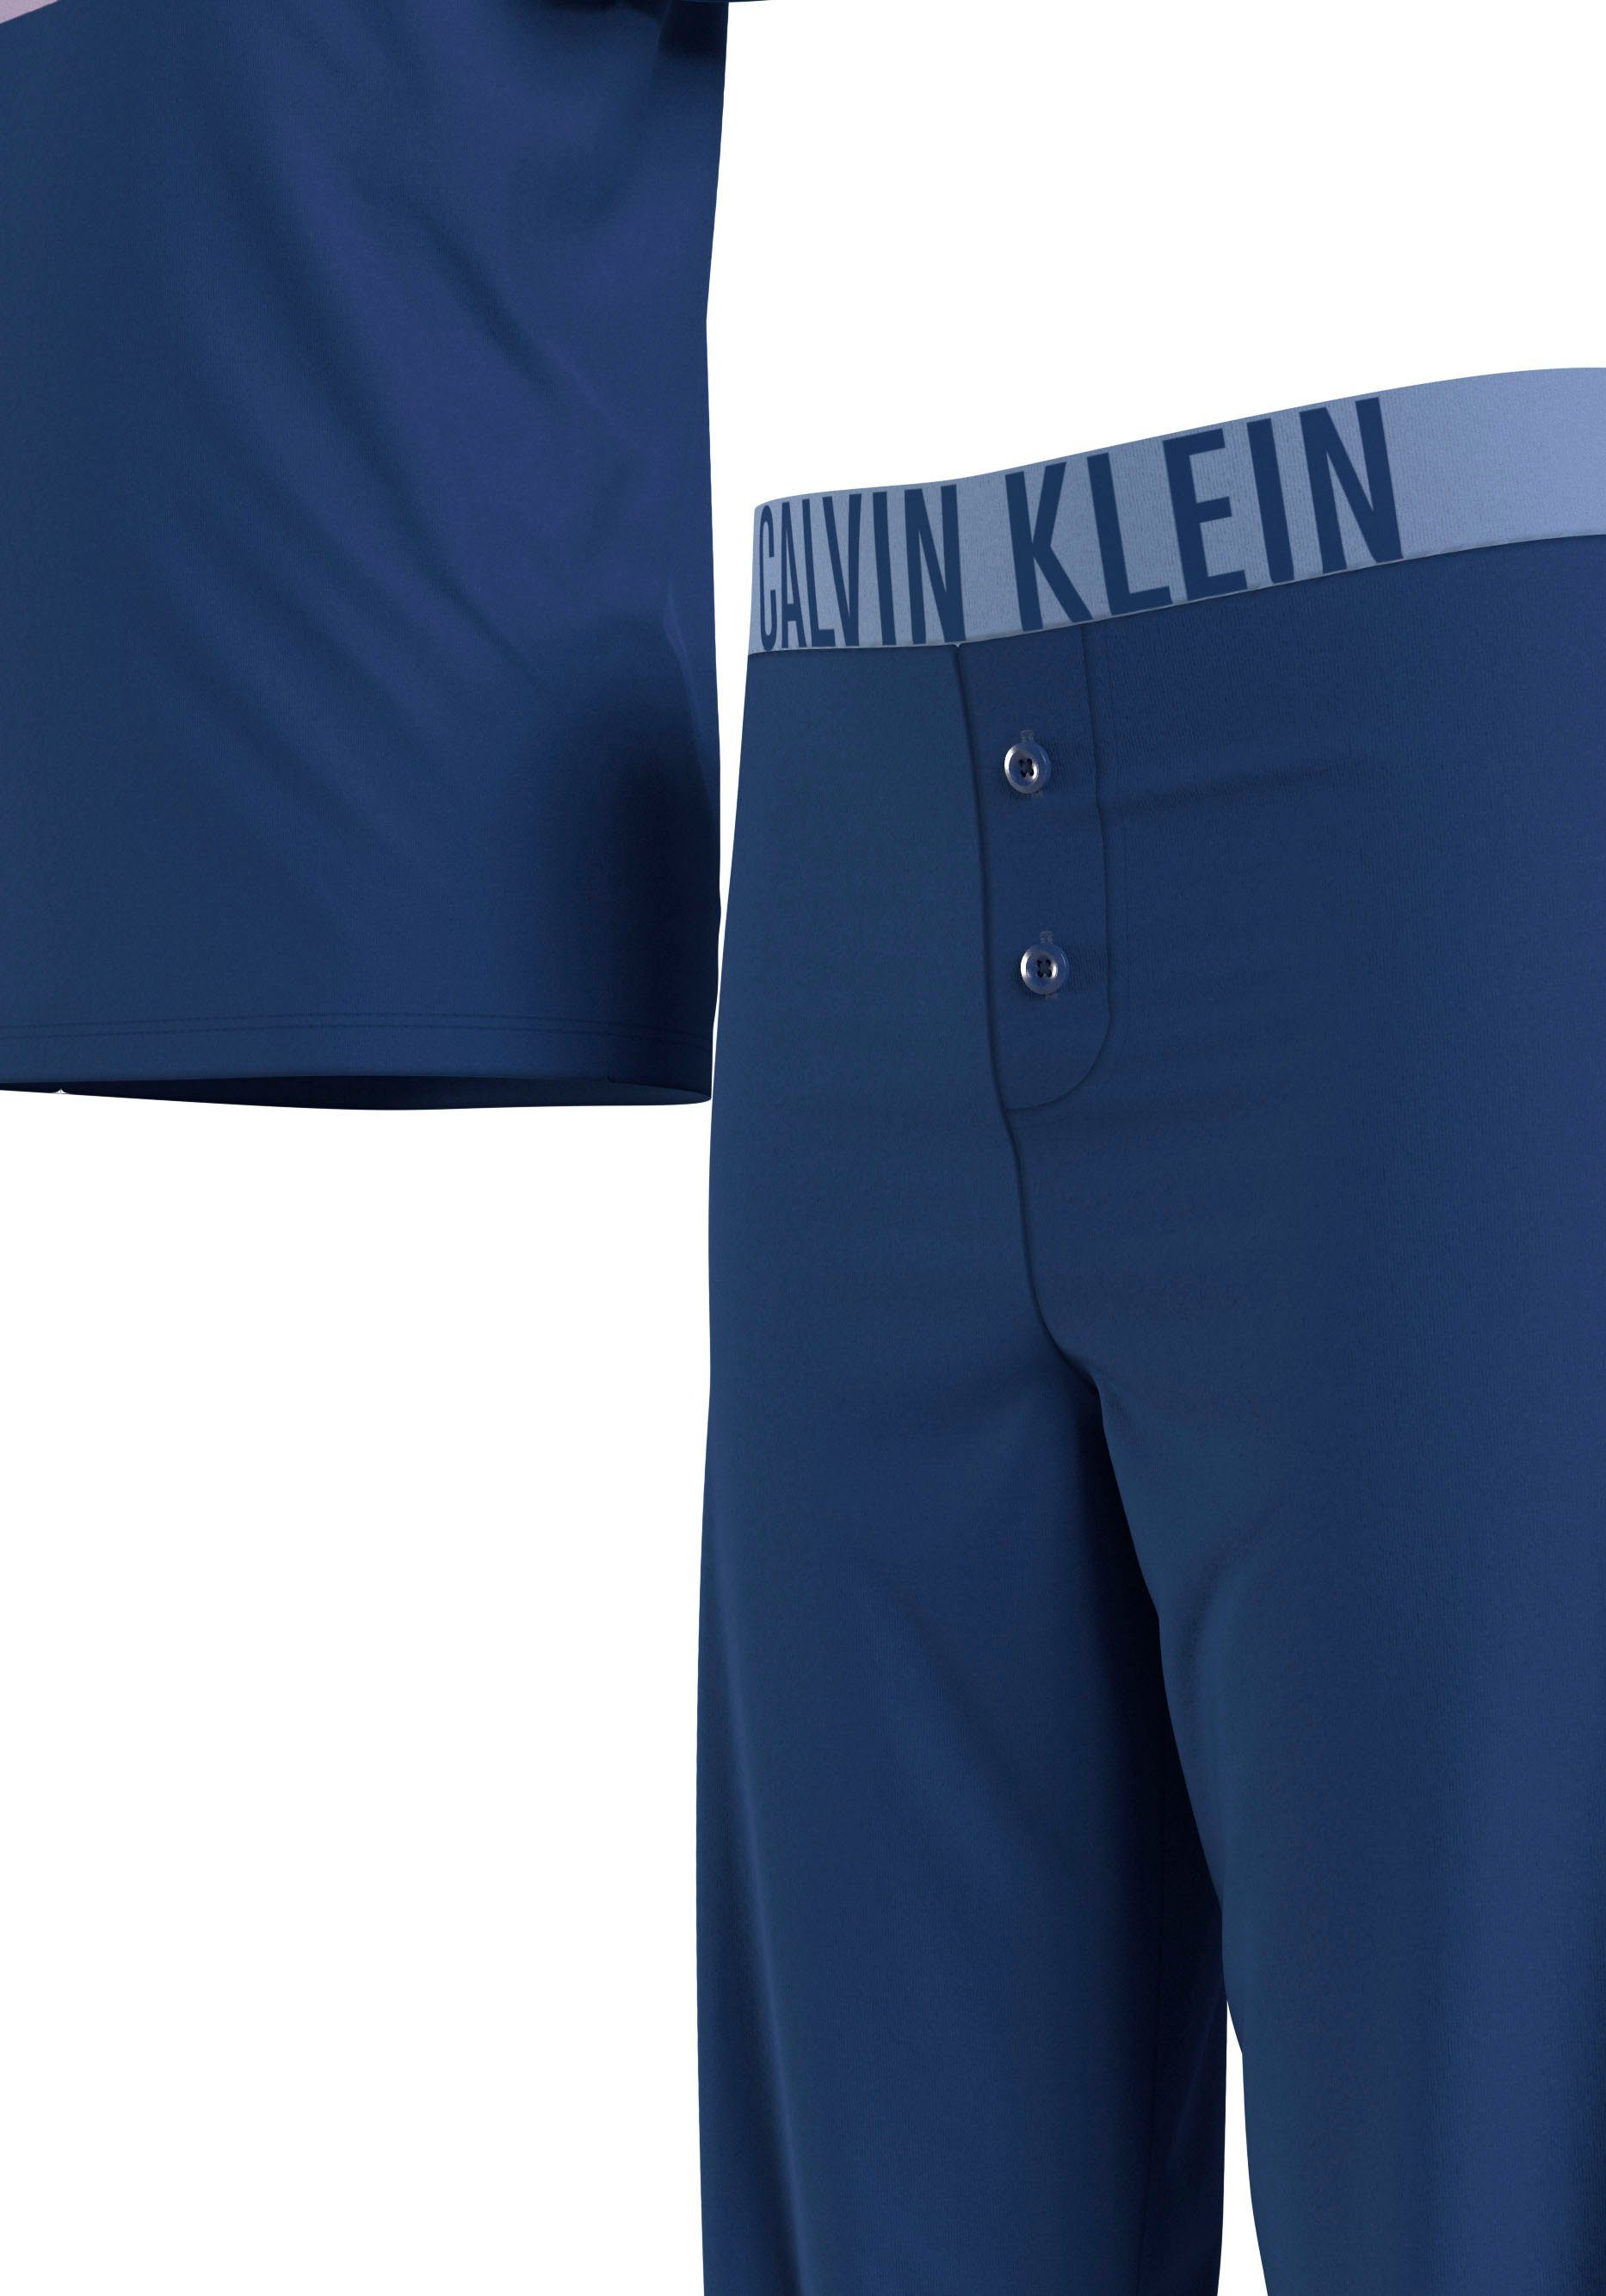 Klein tlg) mit KNIT (SS+PANT) Klein Print Calvin (2 SET PJ Underwear Calvin Pyjama